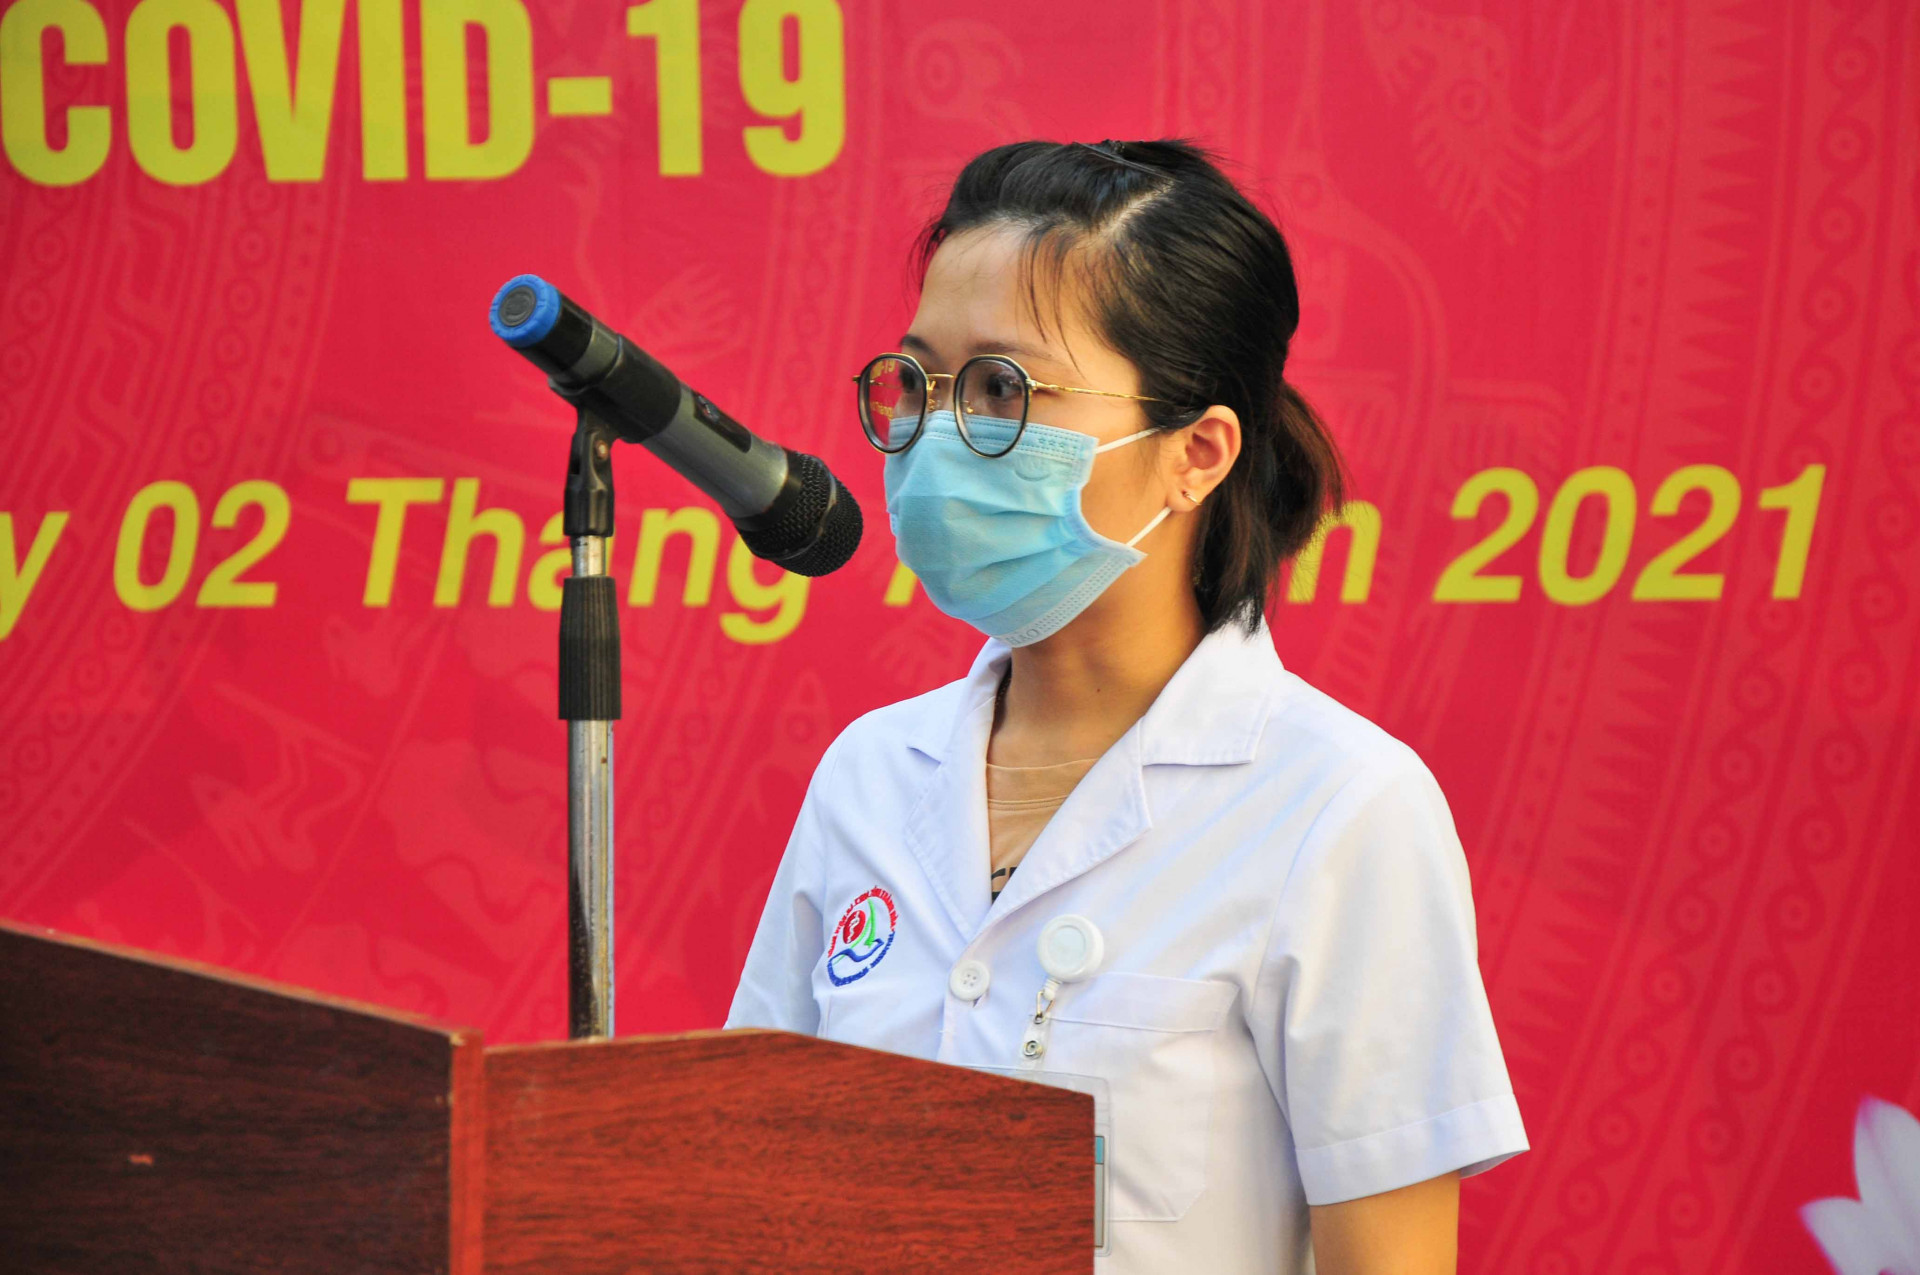 Đại diện đoàn công tác, bác sĩ Trần Thị Thanh Trâm - Bệnh viện Đa khoa tỉnh bày tỏ tinh thần phấn khởi khi được tham gia đoàn công tác hỗ trợ phòng, chống dịch, đồng thời bày tỏ quyết tâm  